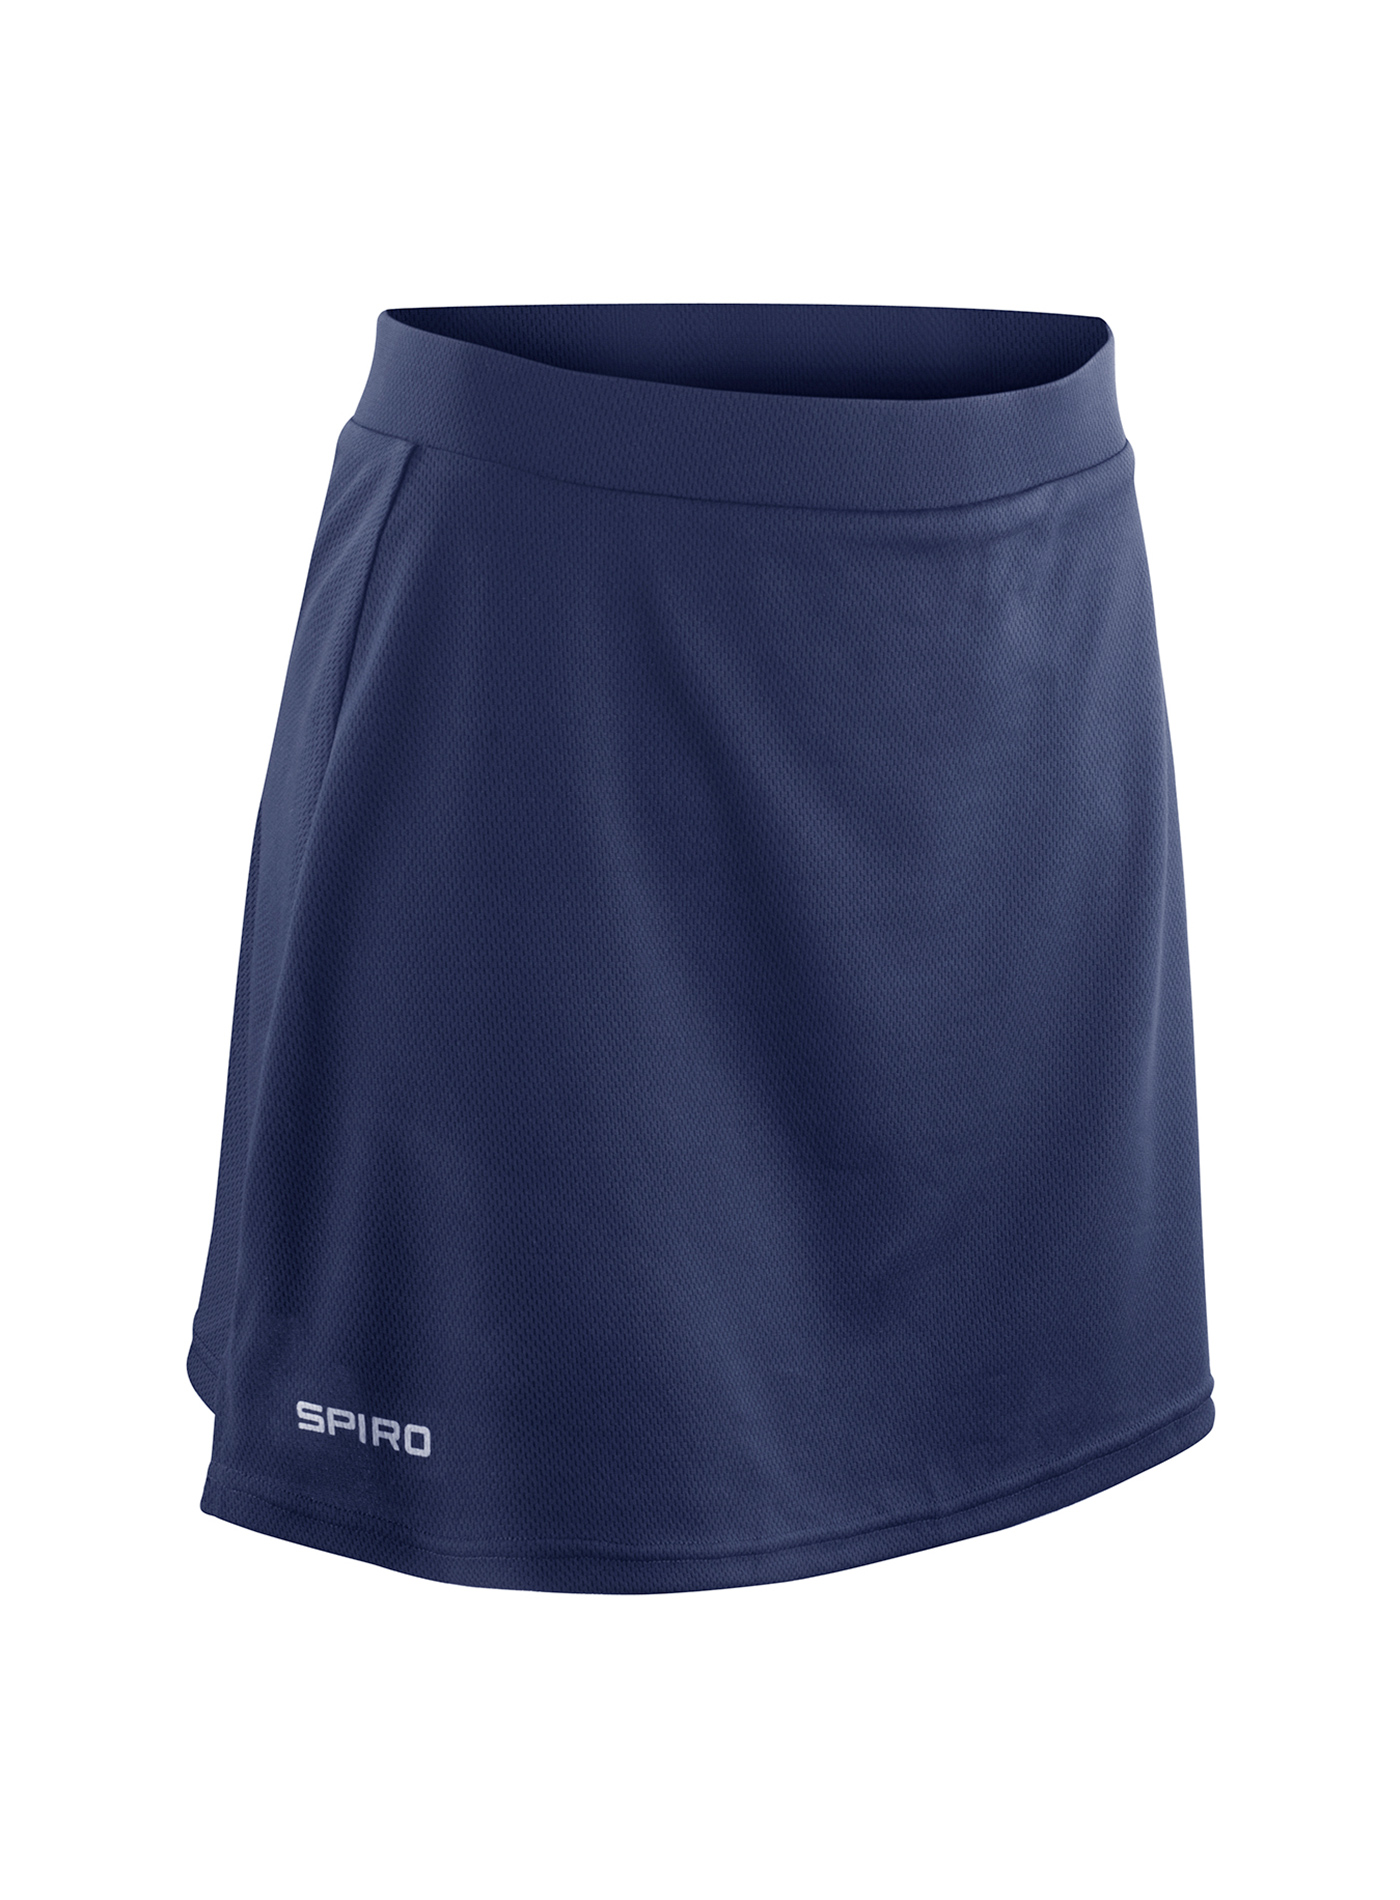 Dámská sportovní sukně s integrovanými šortkami Spiro - Cobalt blue/Navy S